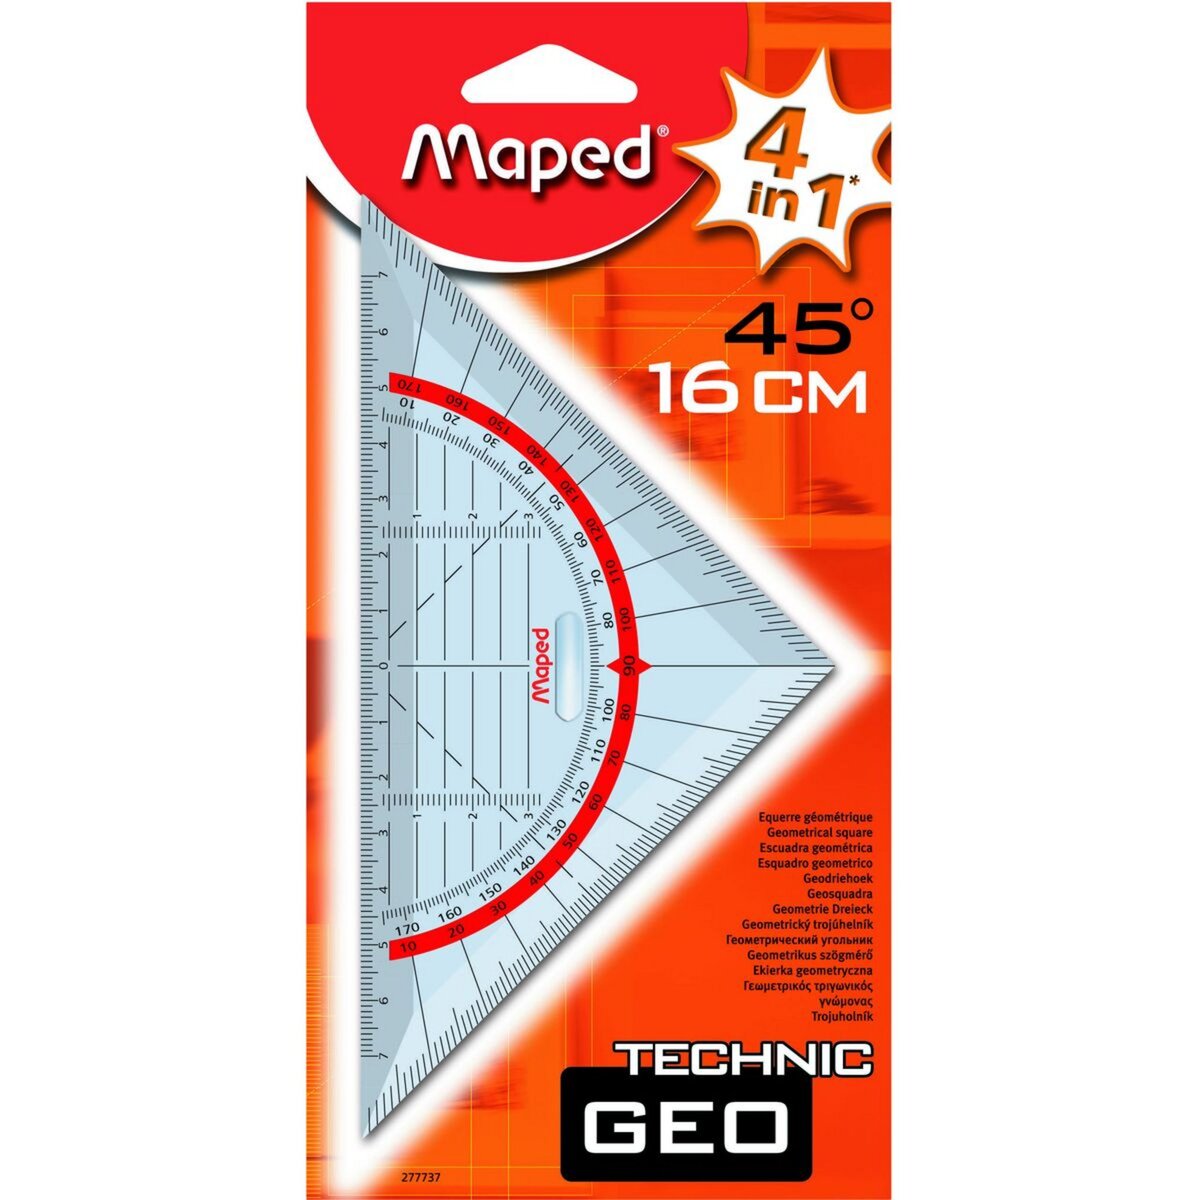 MAPED Equerre géométrique 4 en 1 Technic Geo 45° 16cm